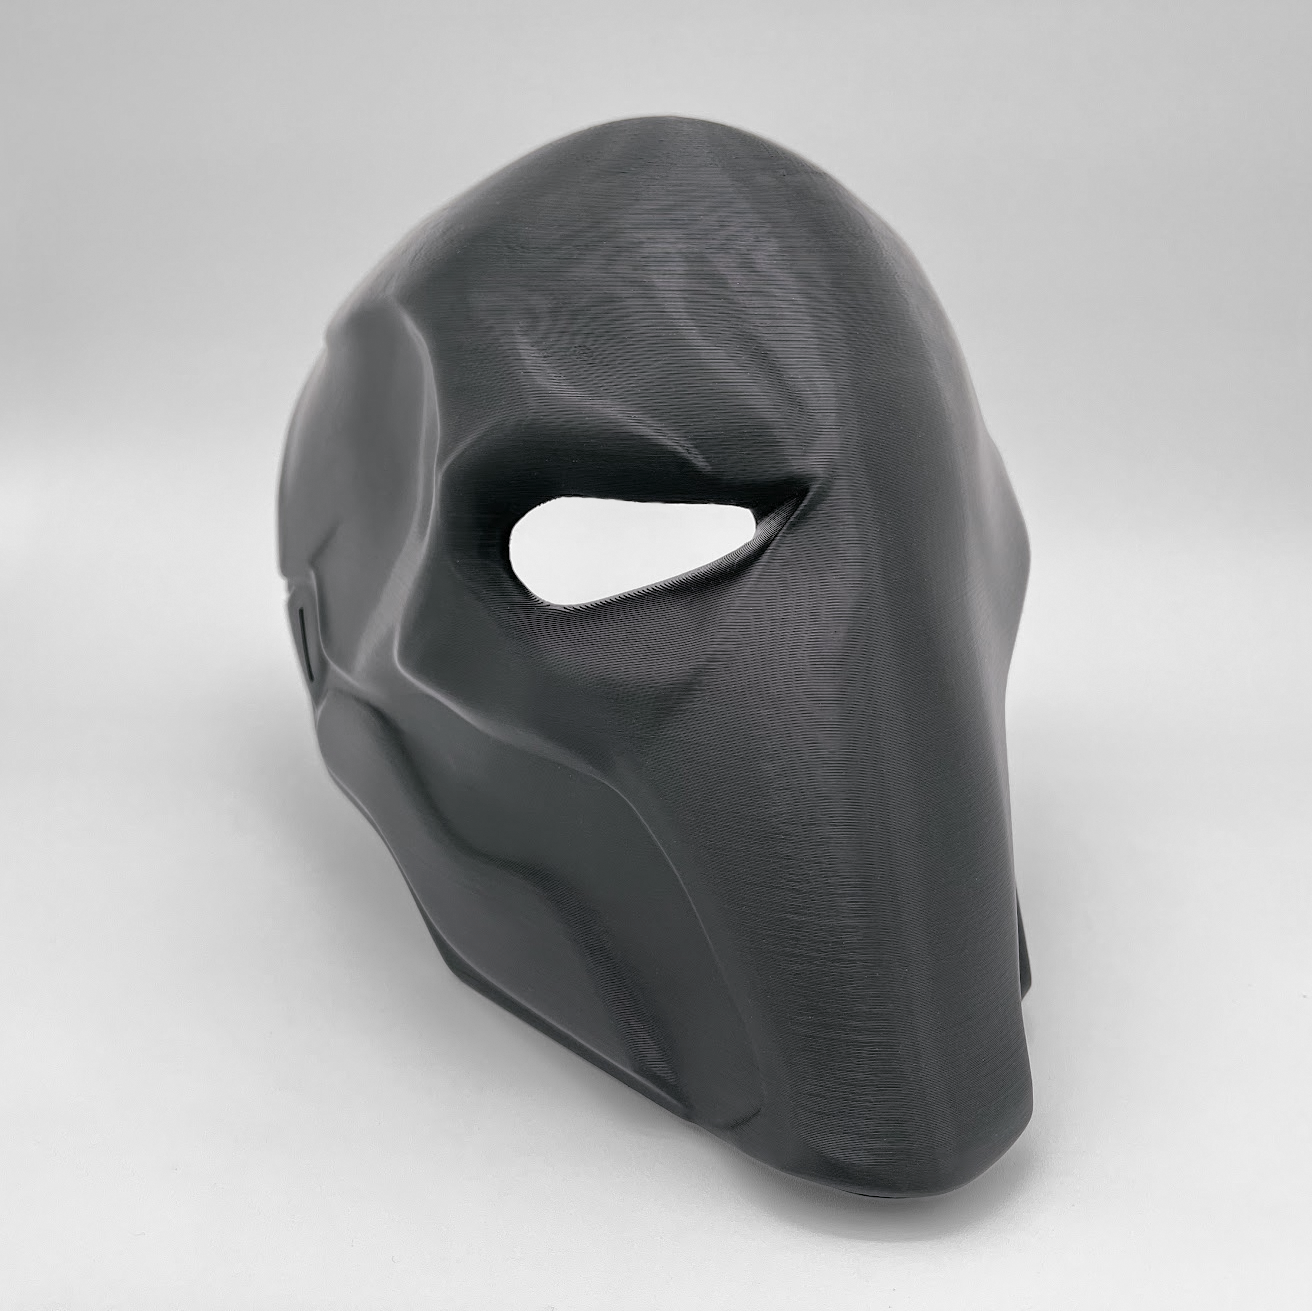 Deathstroke Mask